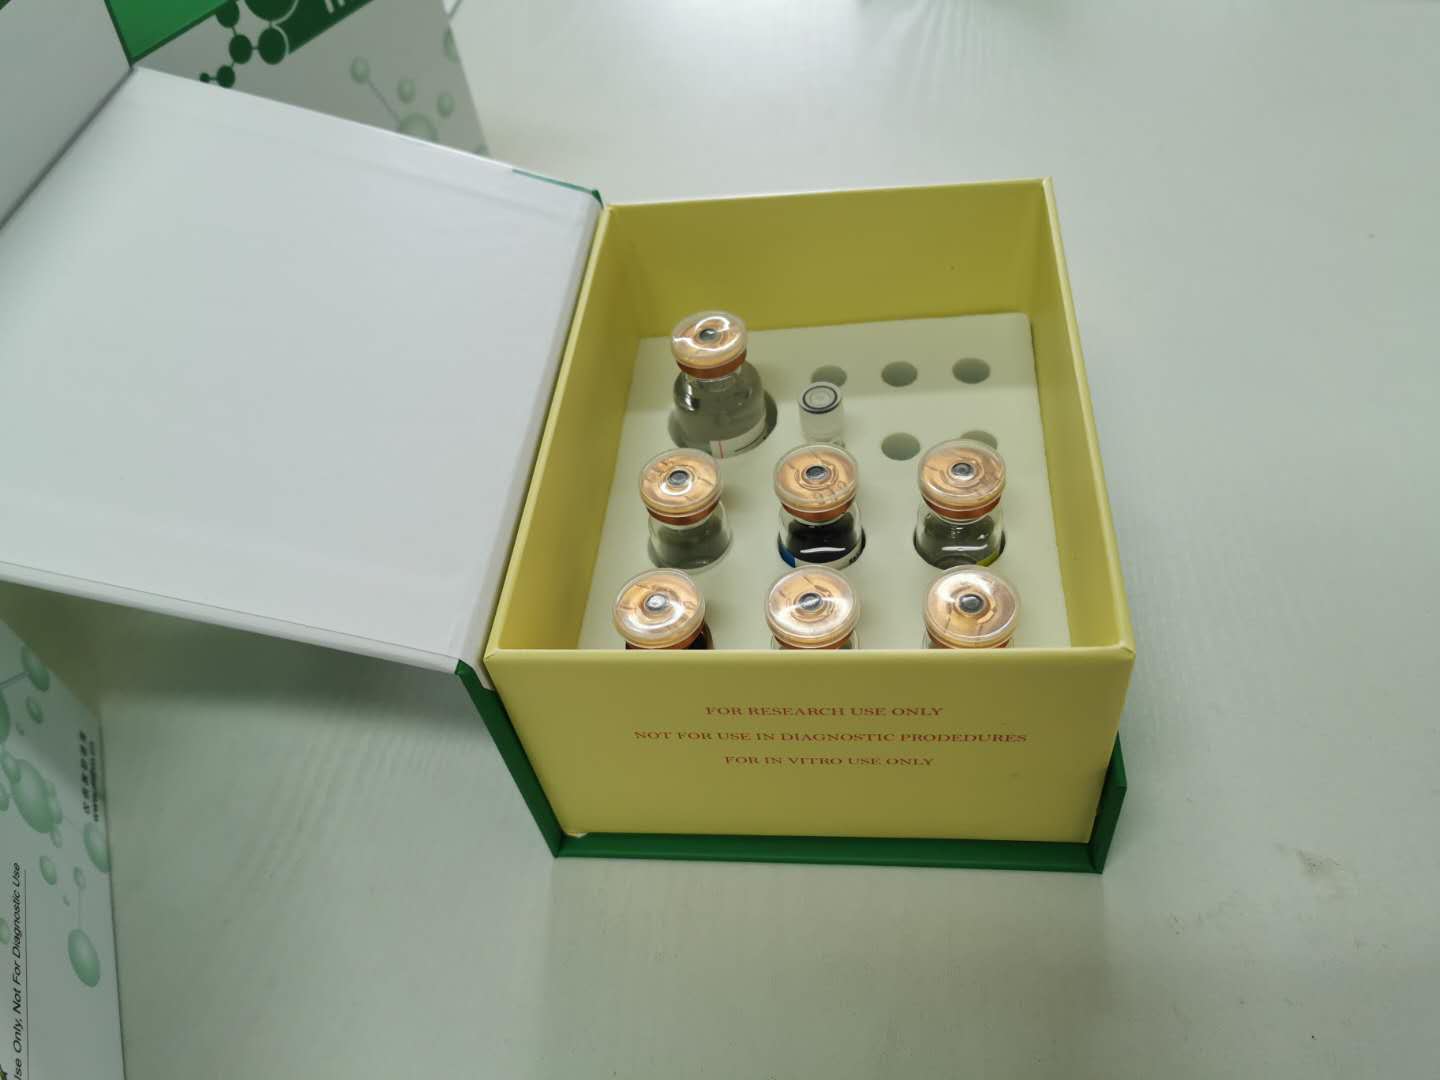 大鼠雌激素受体试剂盒产品用途